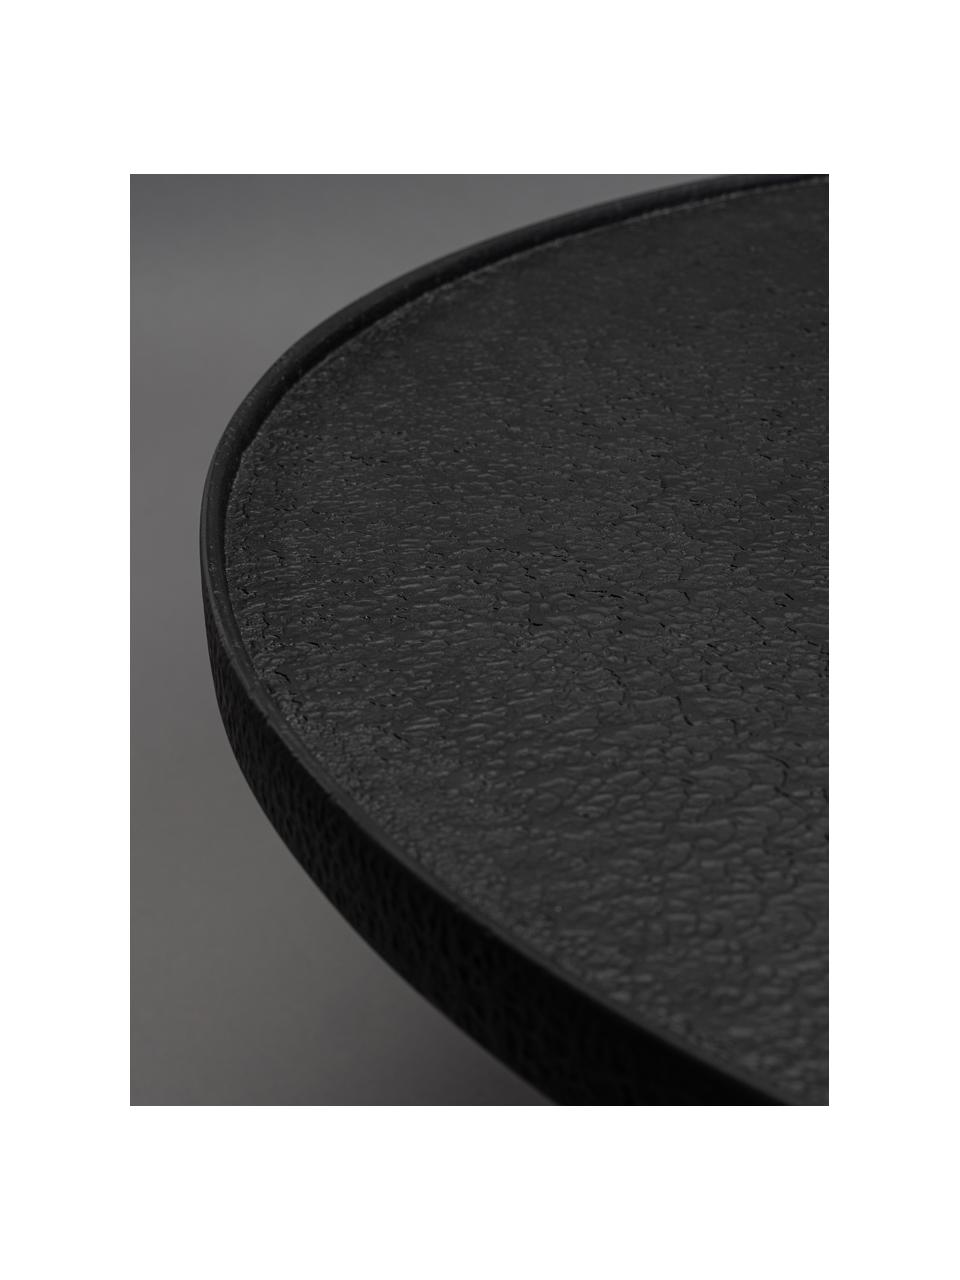 Tavolino rotondo da salotto Winston, Legno, nero verniciato, Ø 70 cm